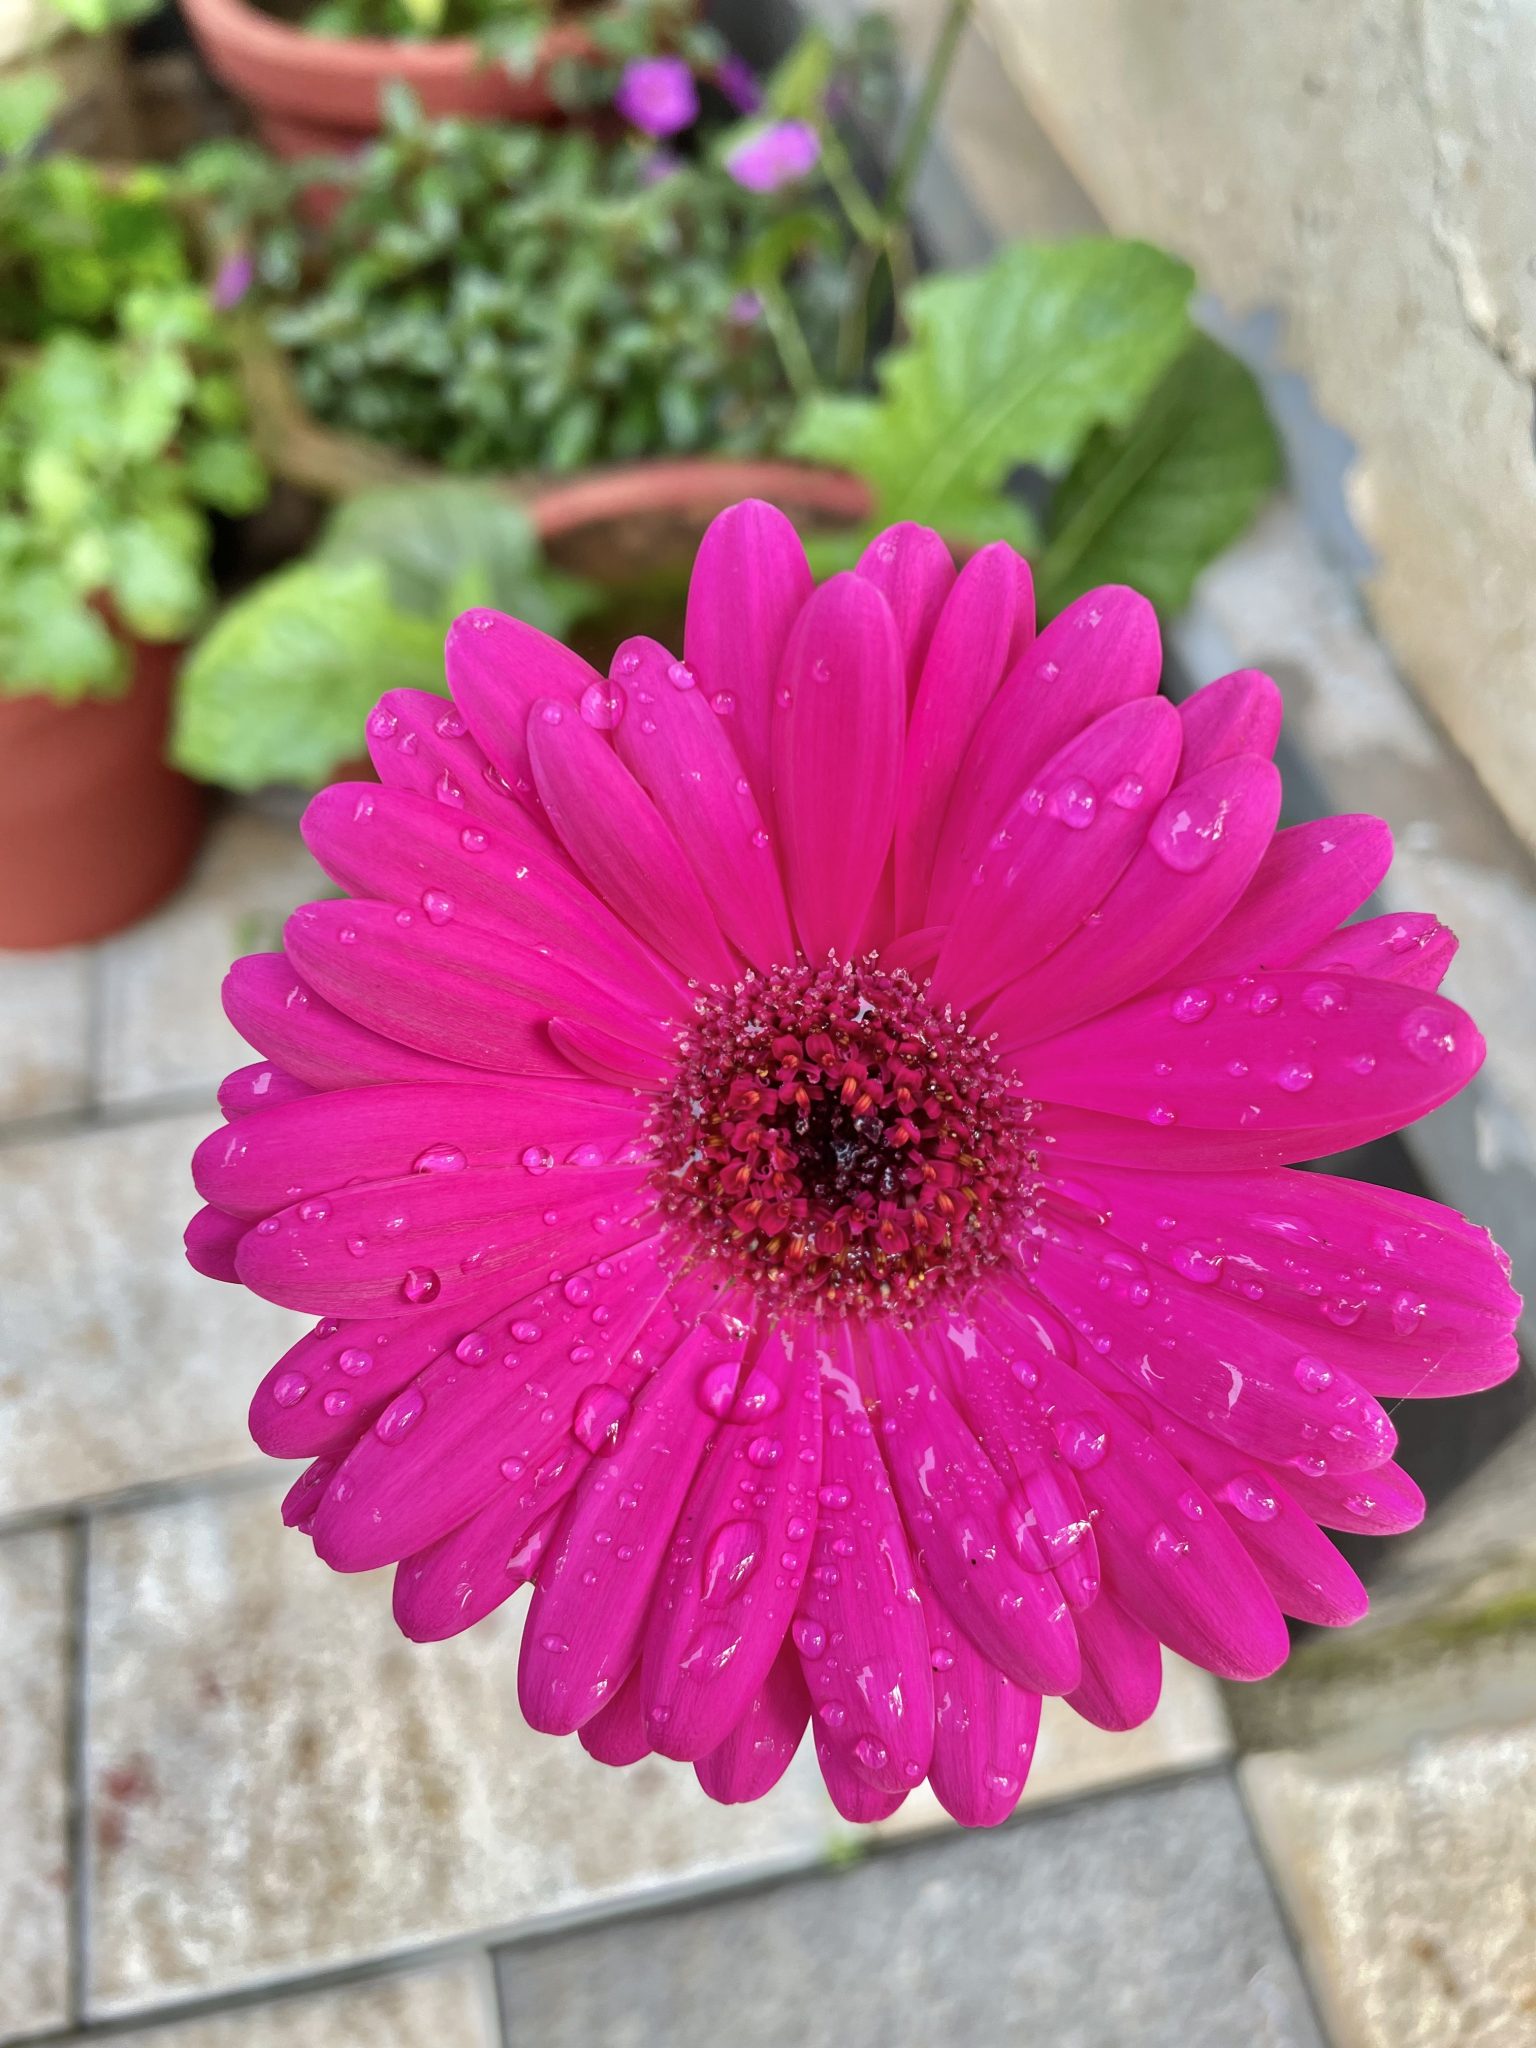 Gerbera flower after a rain. From our garden